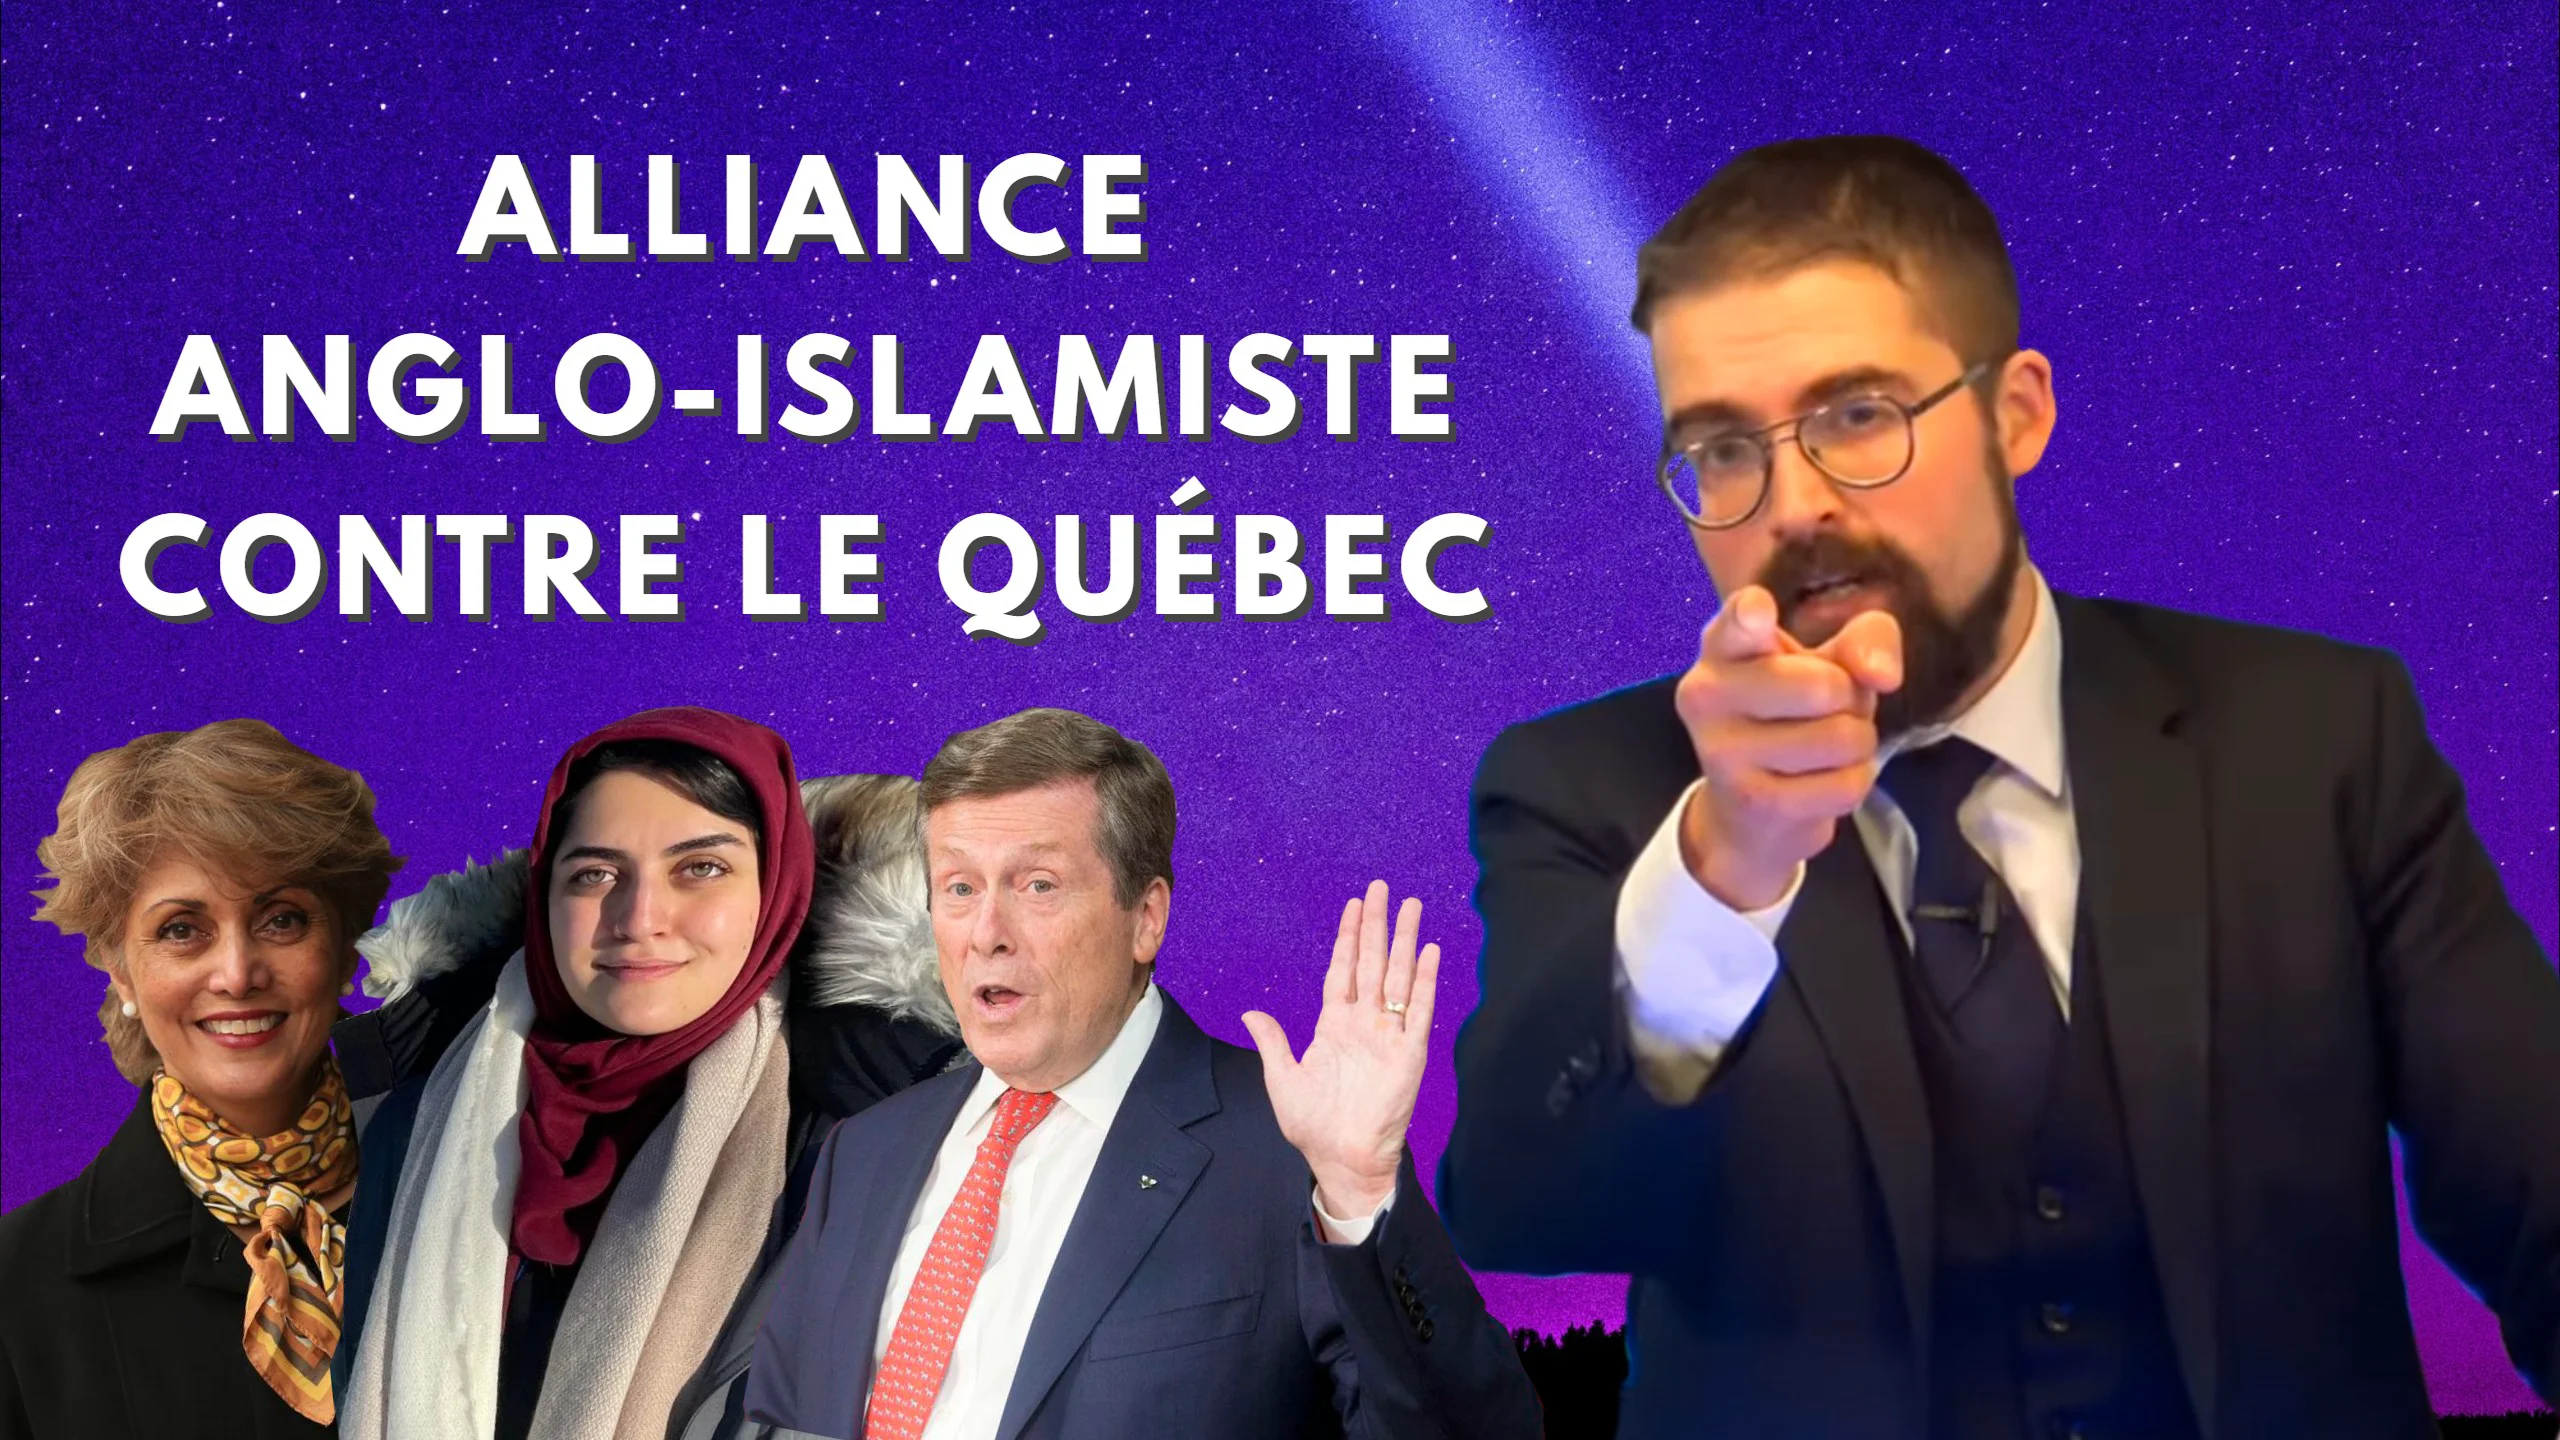 Alliance anglo-islamiste contre le Québec [EN DIRECT]